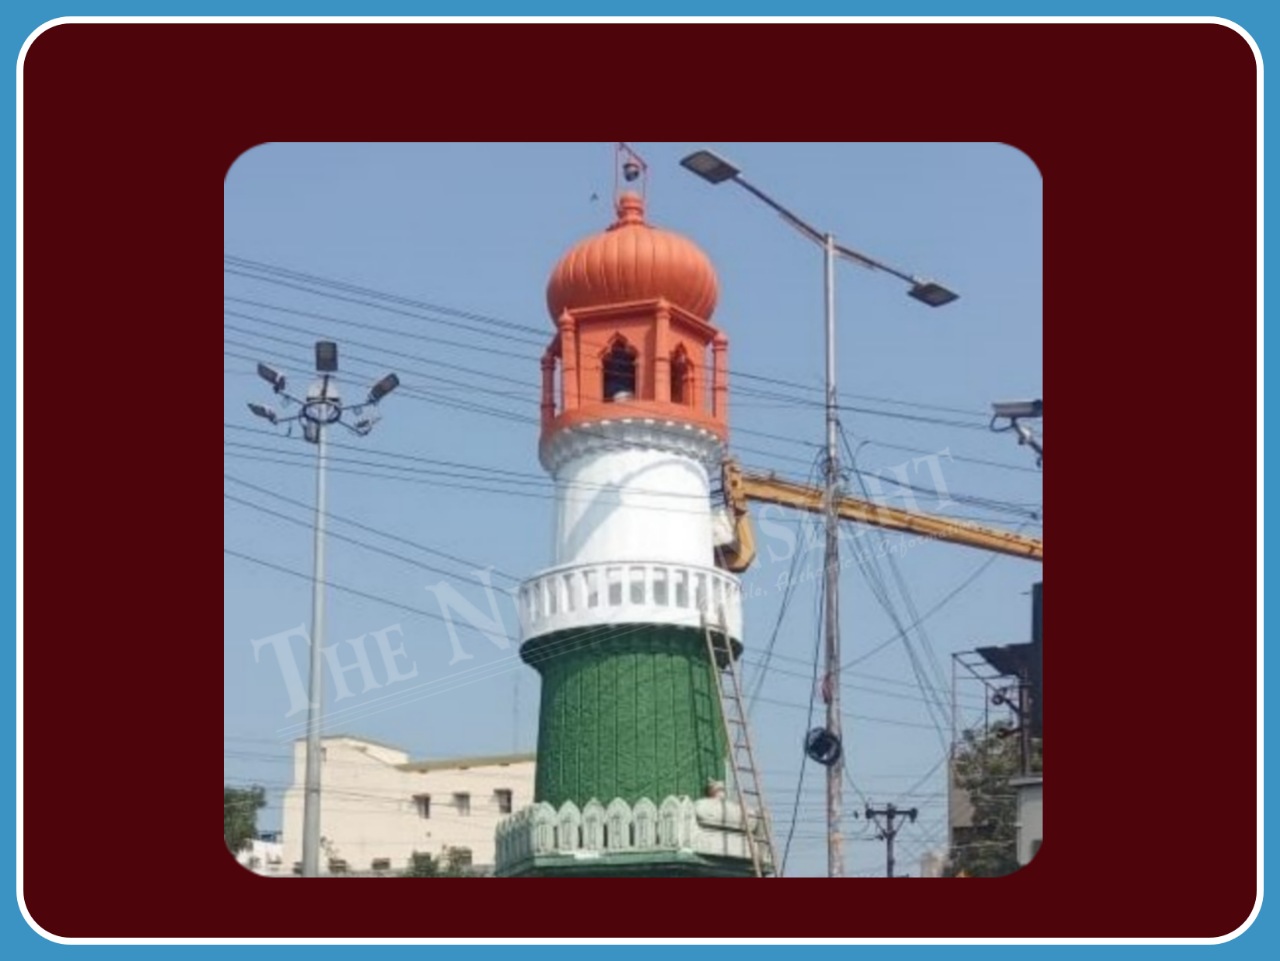 Jinnah Tower Guntur Andhra Pradesh